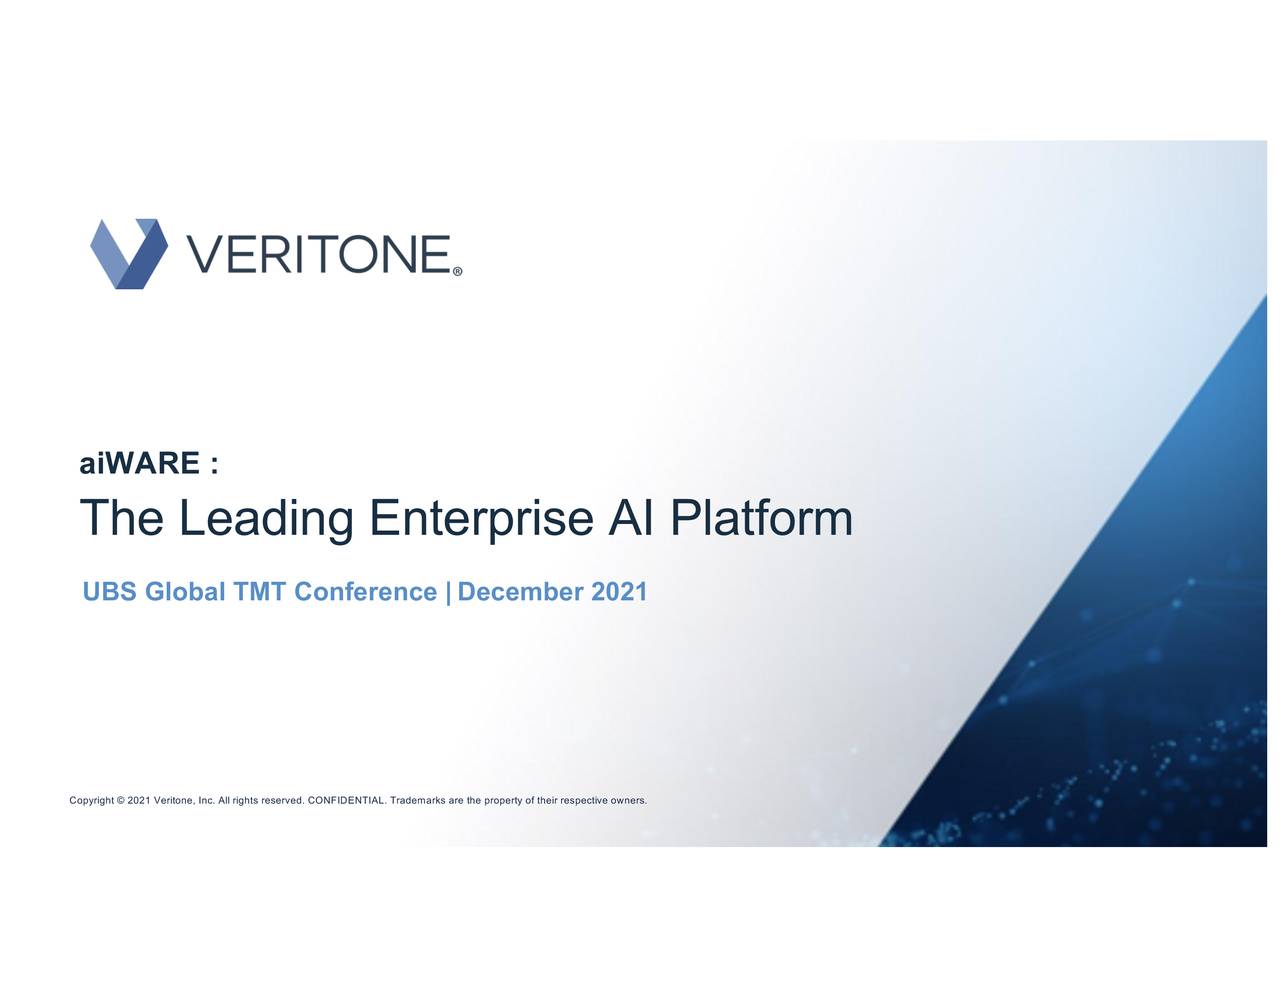 Veritone (VERI) presents at UBS Global TMT Conference Slideshow